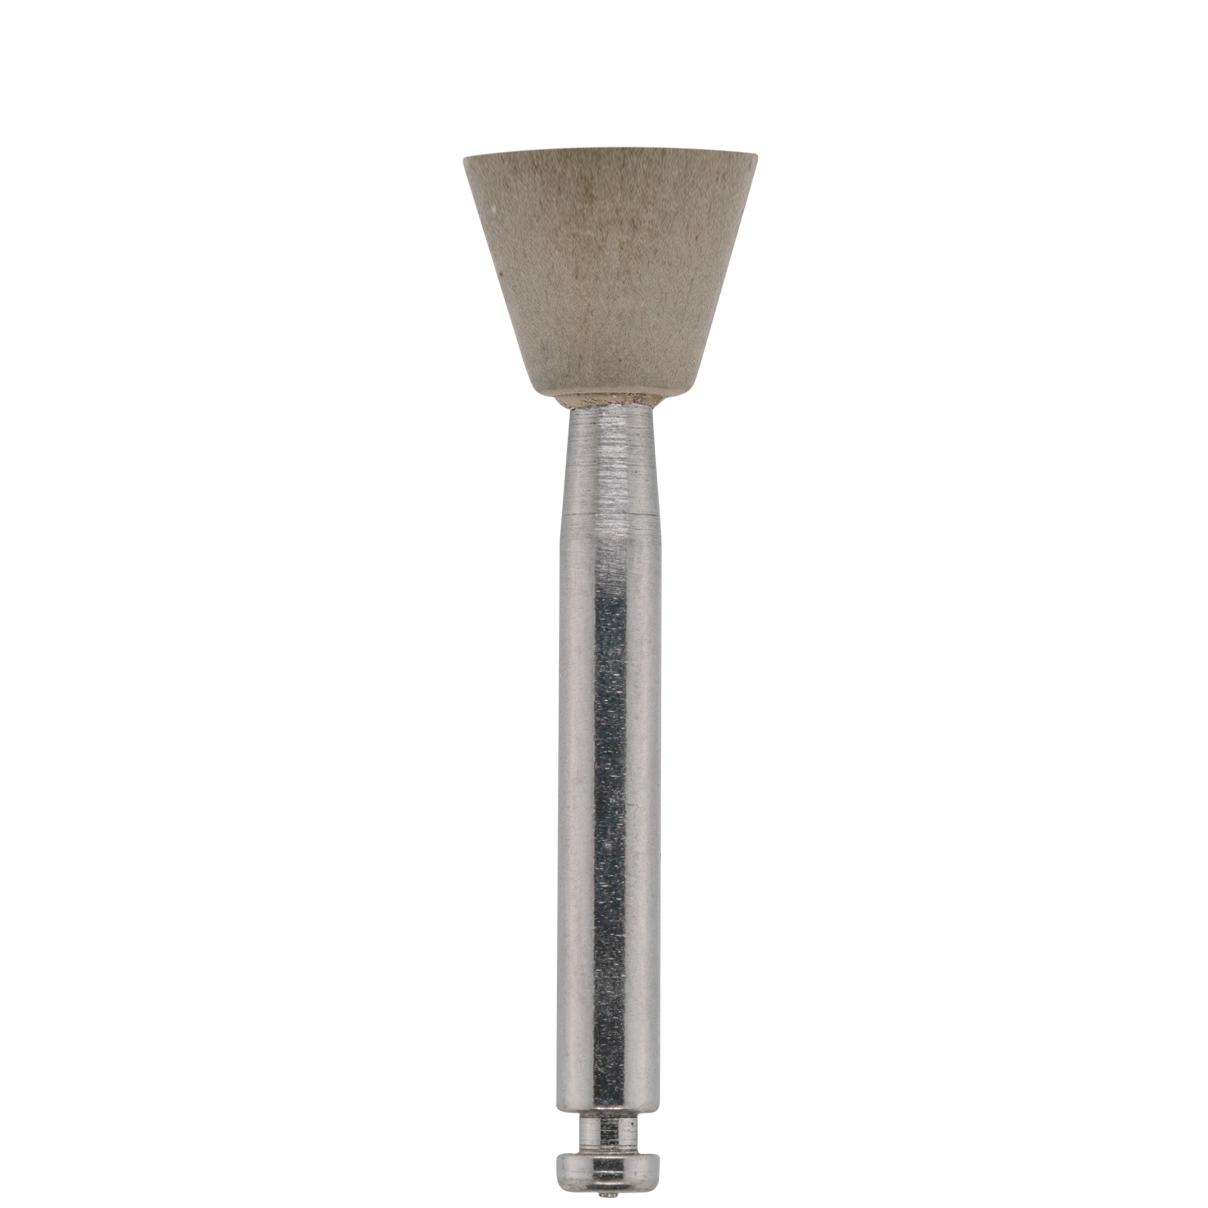 Meulette Cerapol Plus, gris, RA-0334 Grain fin - Ø8,6/7,2 mm, cône inversé